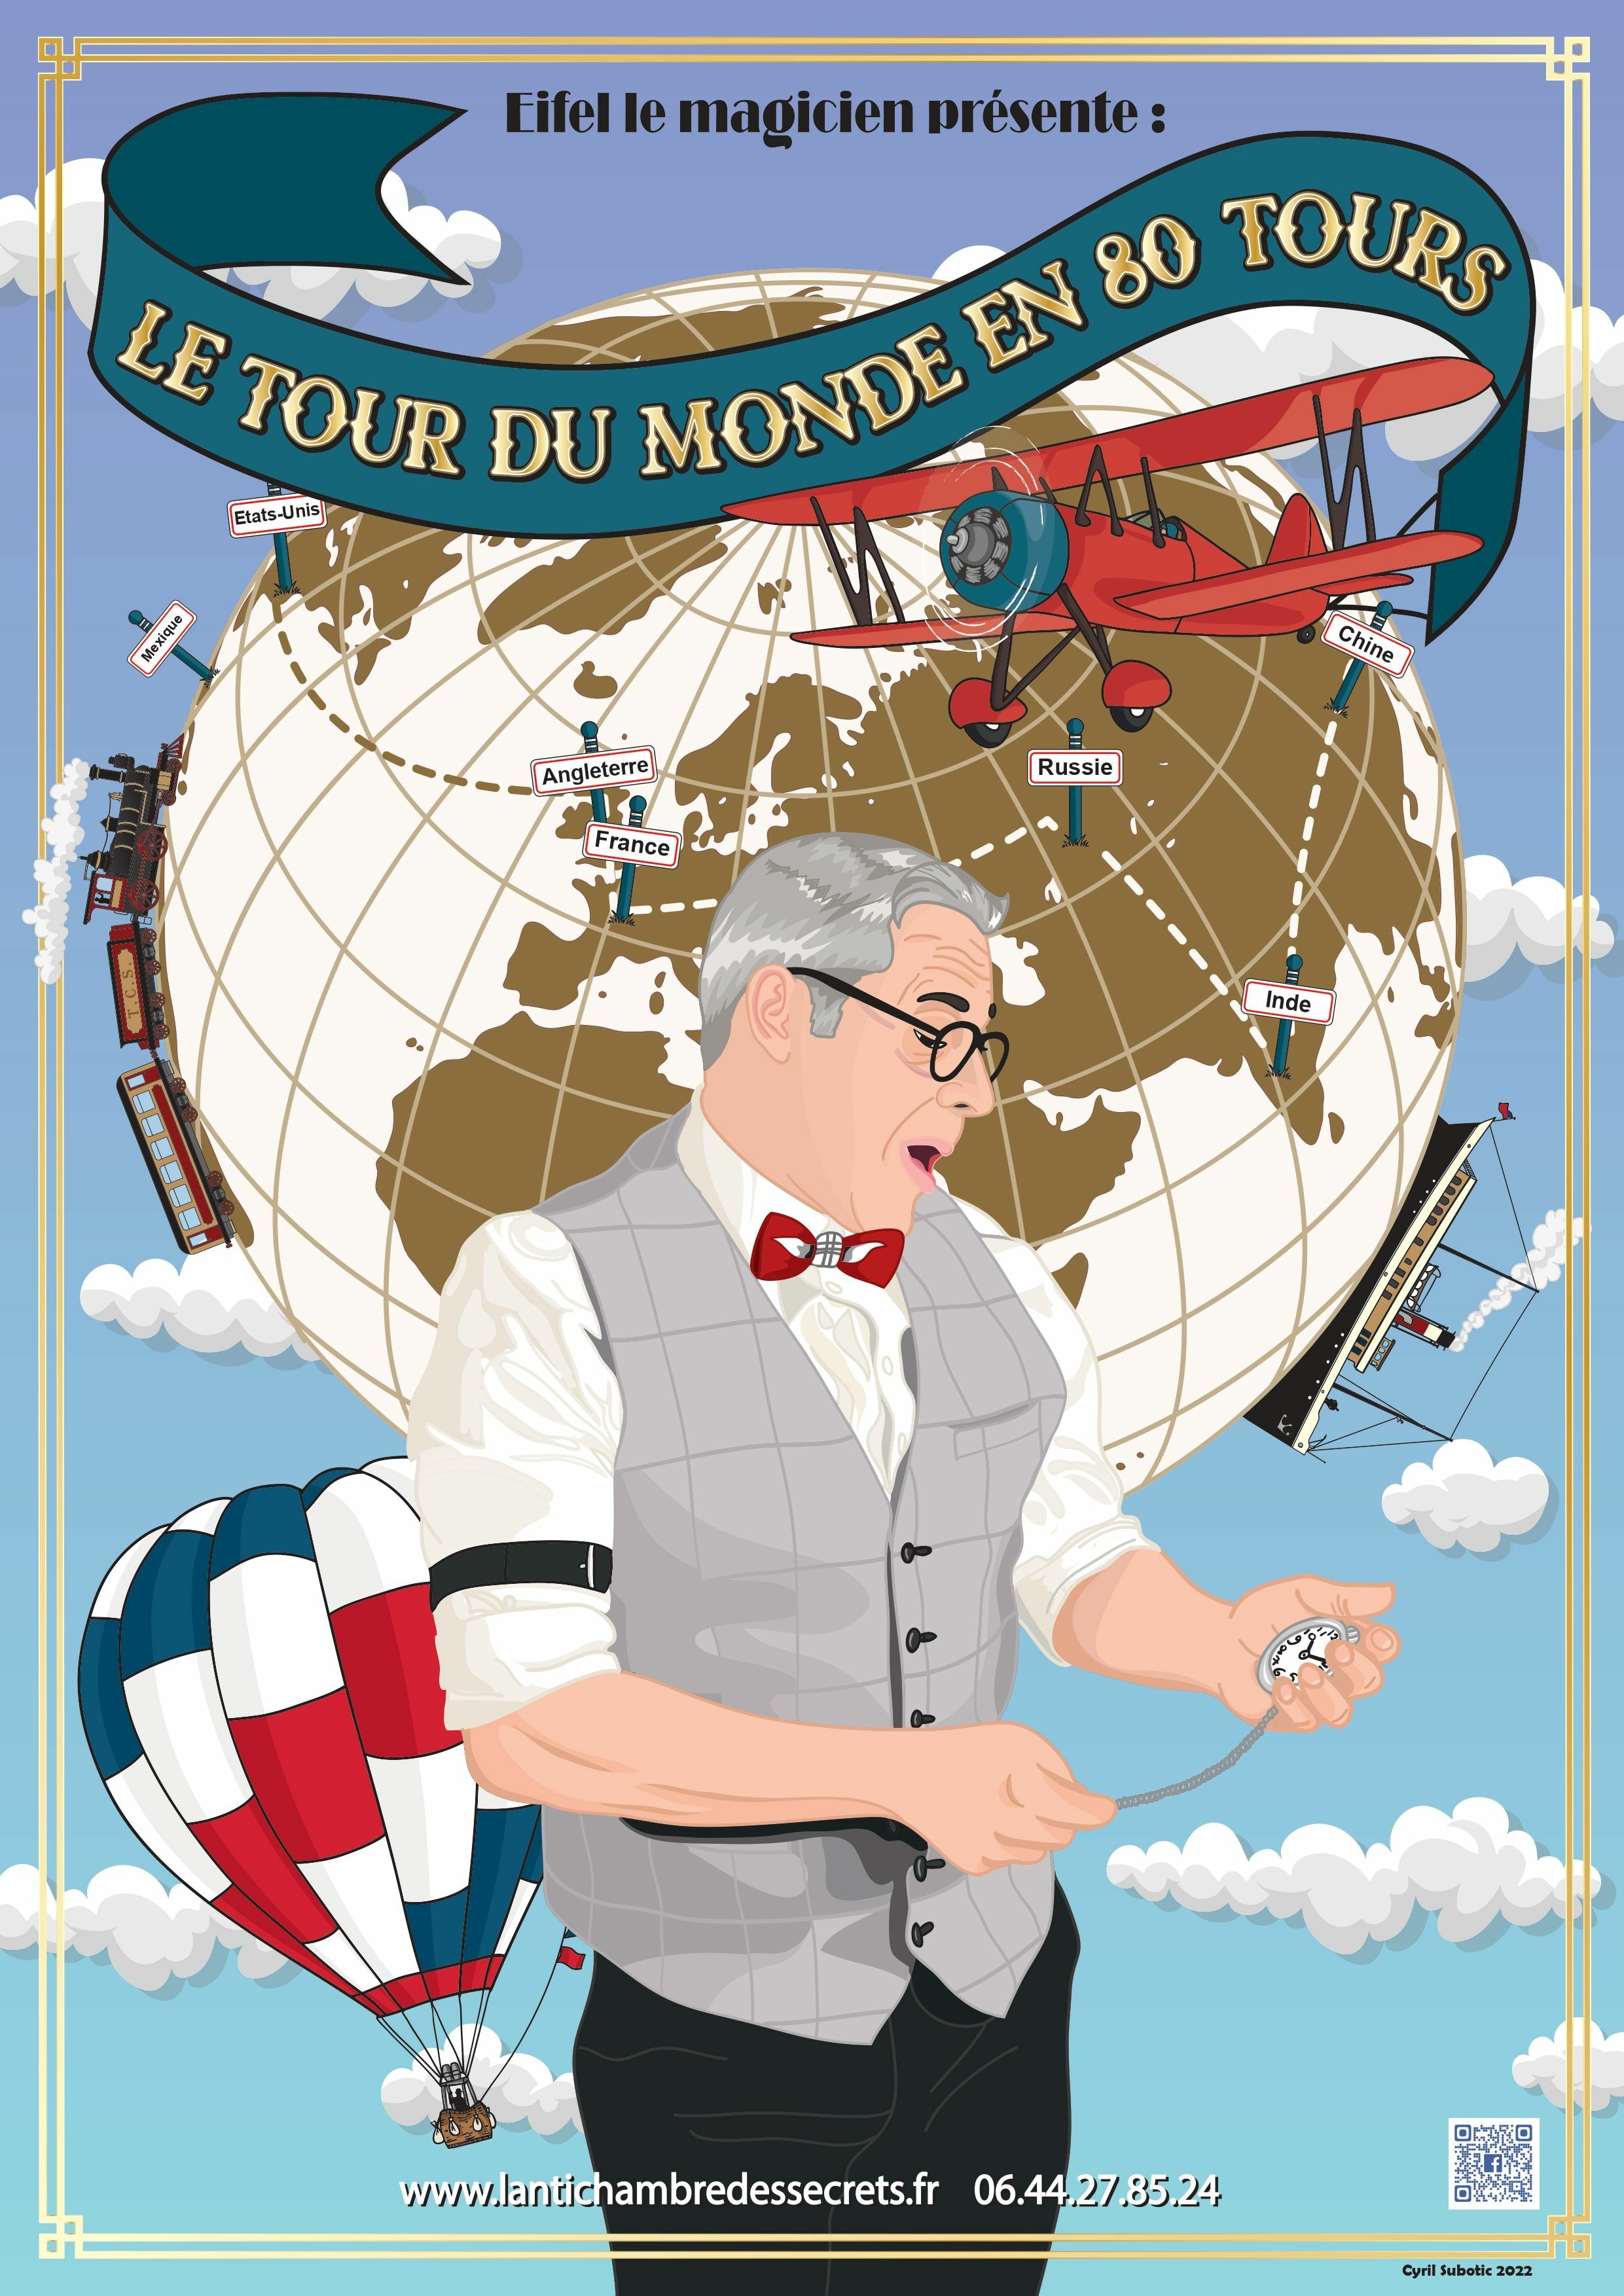 Le Tour du Monde en 80 Tours - Théâtre